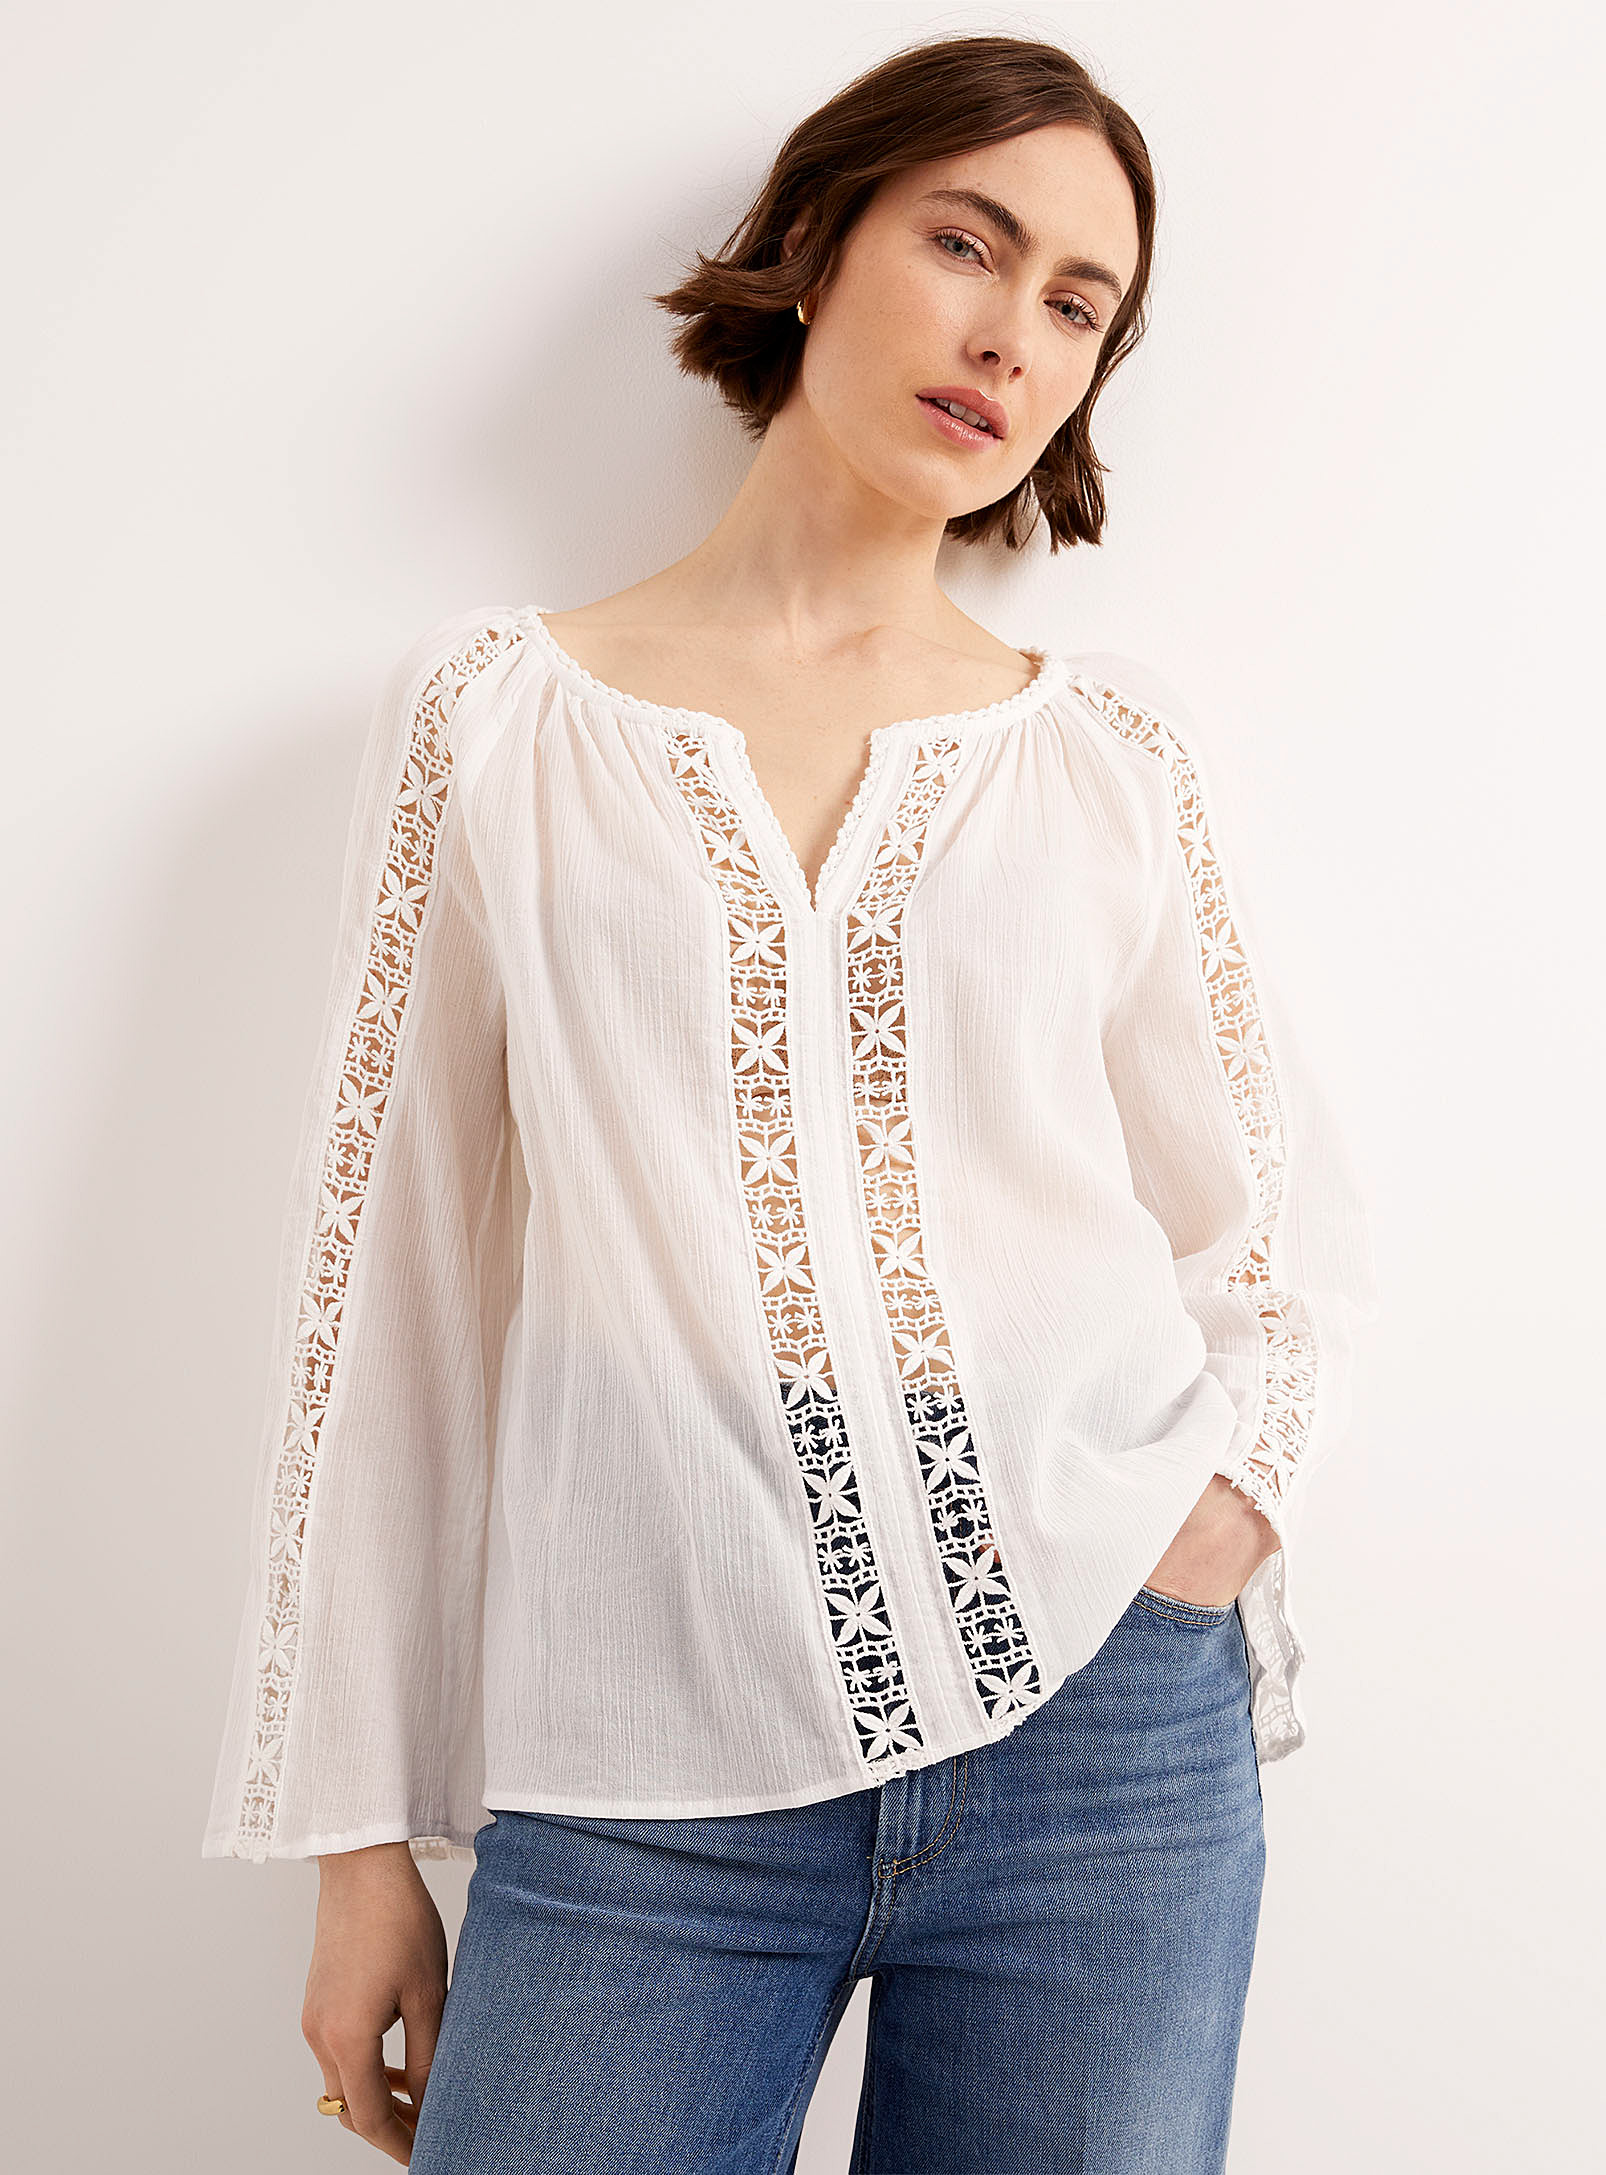 Contemporaine - La blouse diaphane rubans crochetés